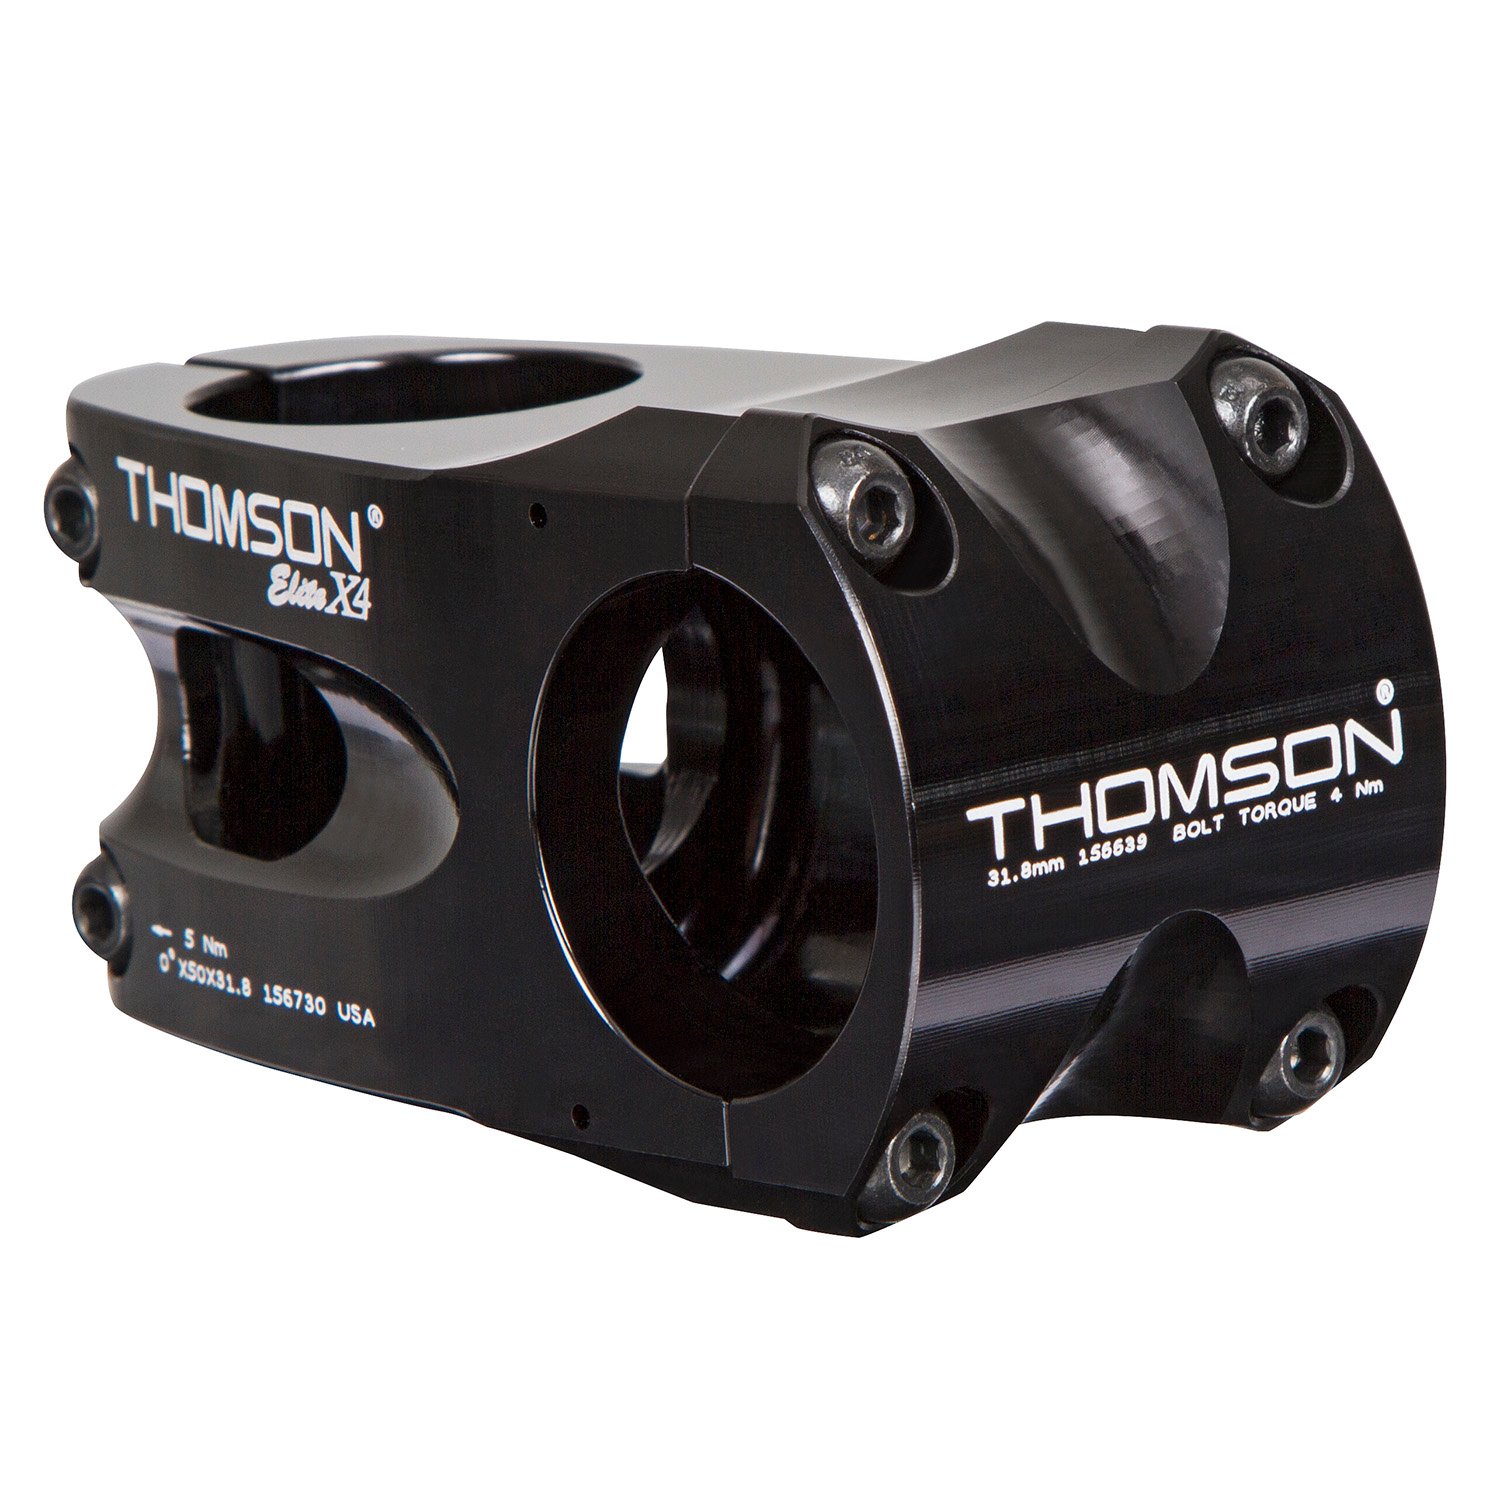 Thomson MTB Stem Elite X4 Black, 31.8 mm, A-Head, 50 mm, 0 Degrees